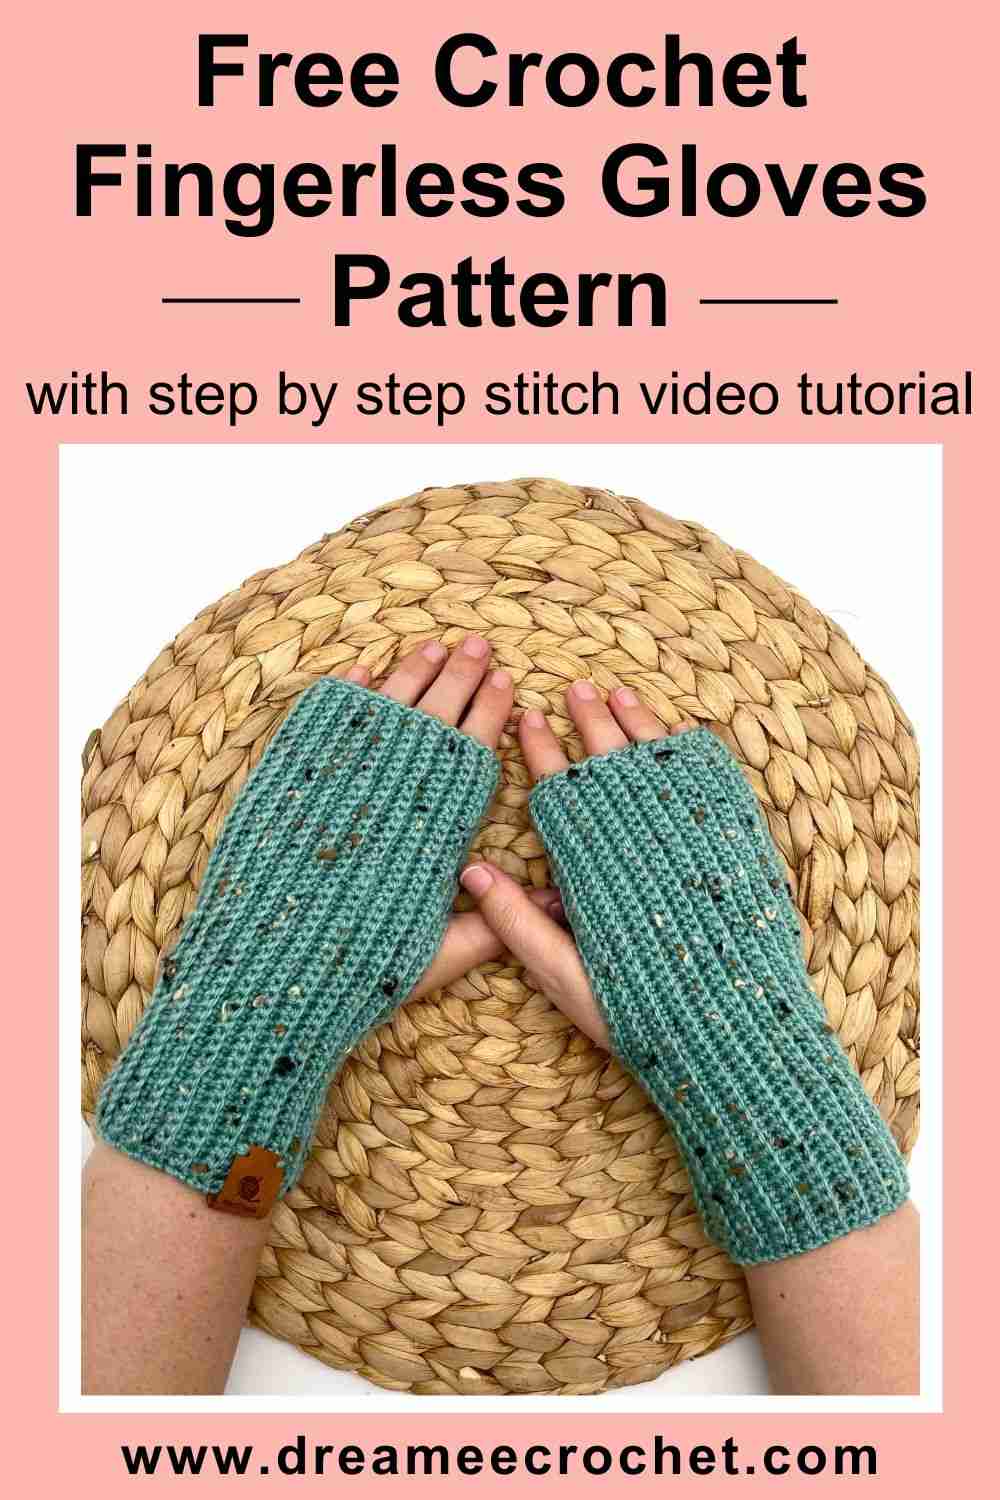 Free Crochet Fingerless Gloves Pattern, Crochet Fingerless Mittens (7)